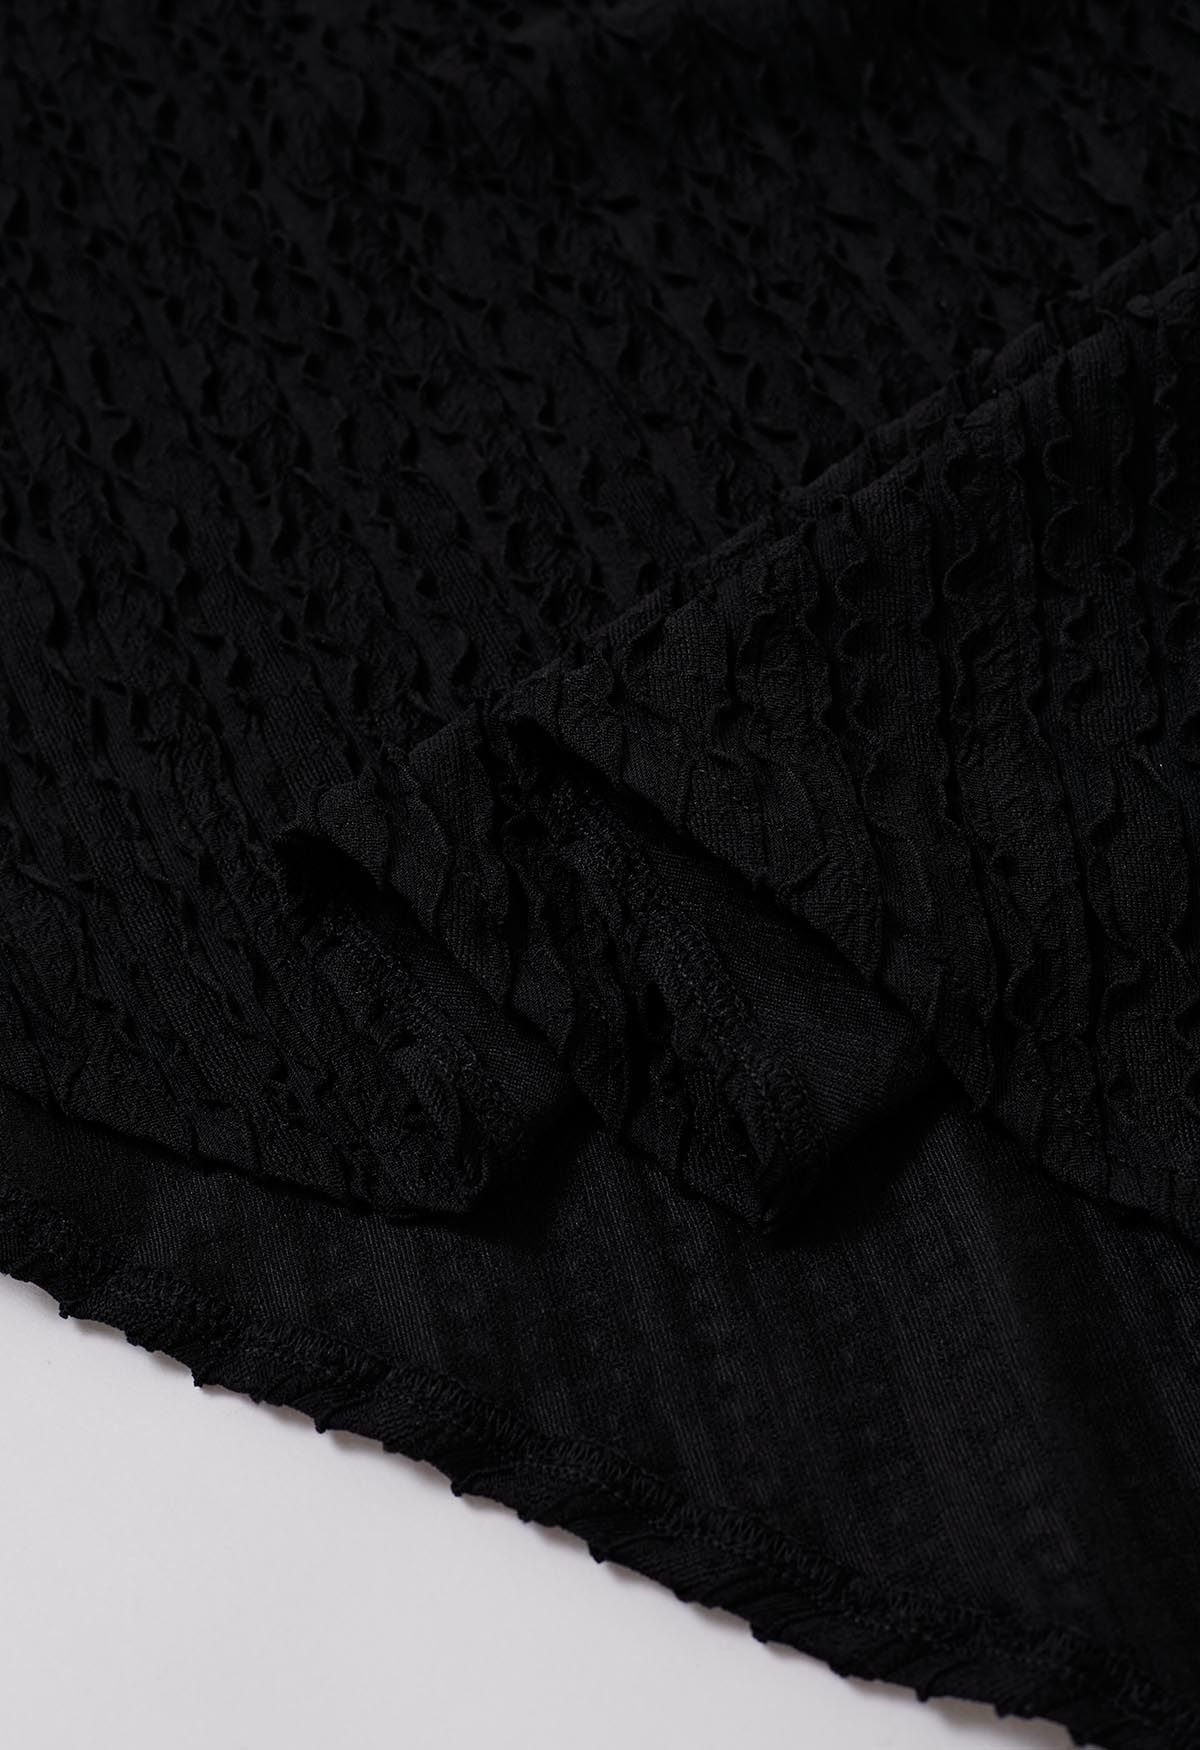 Vestido con textura ondulada, escote sobrepelliz y cuello en negro